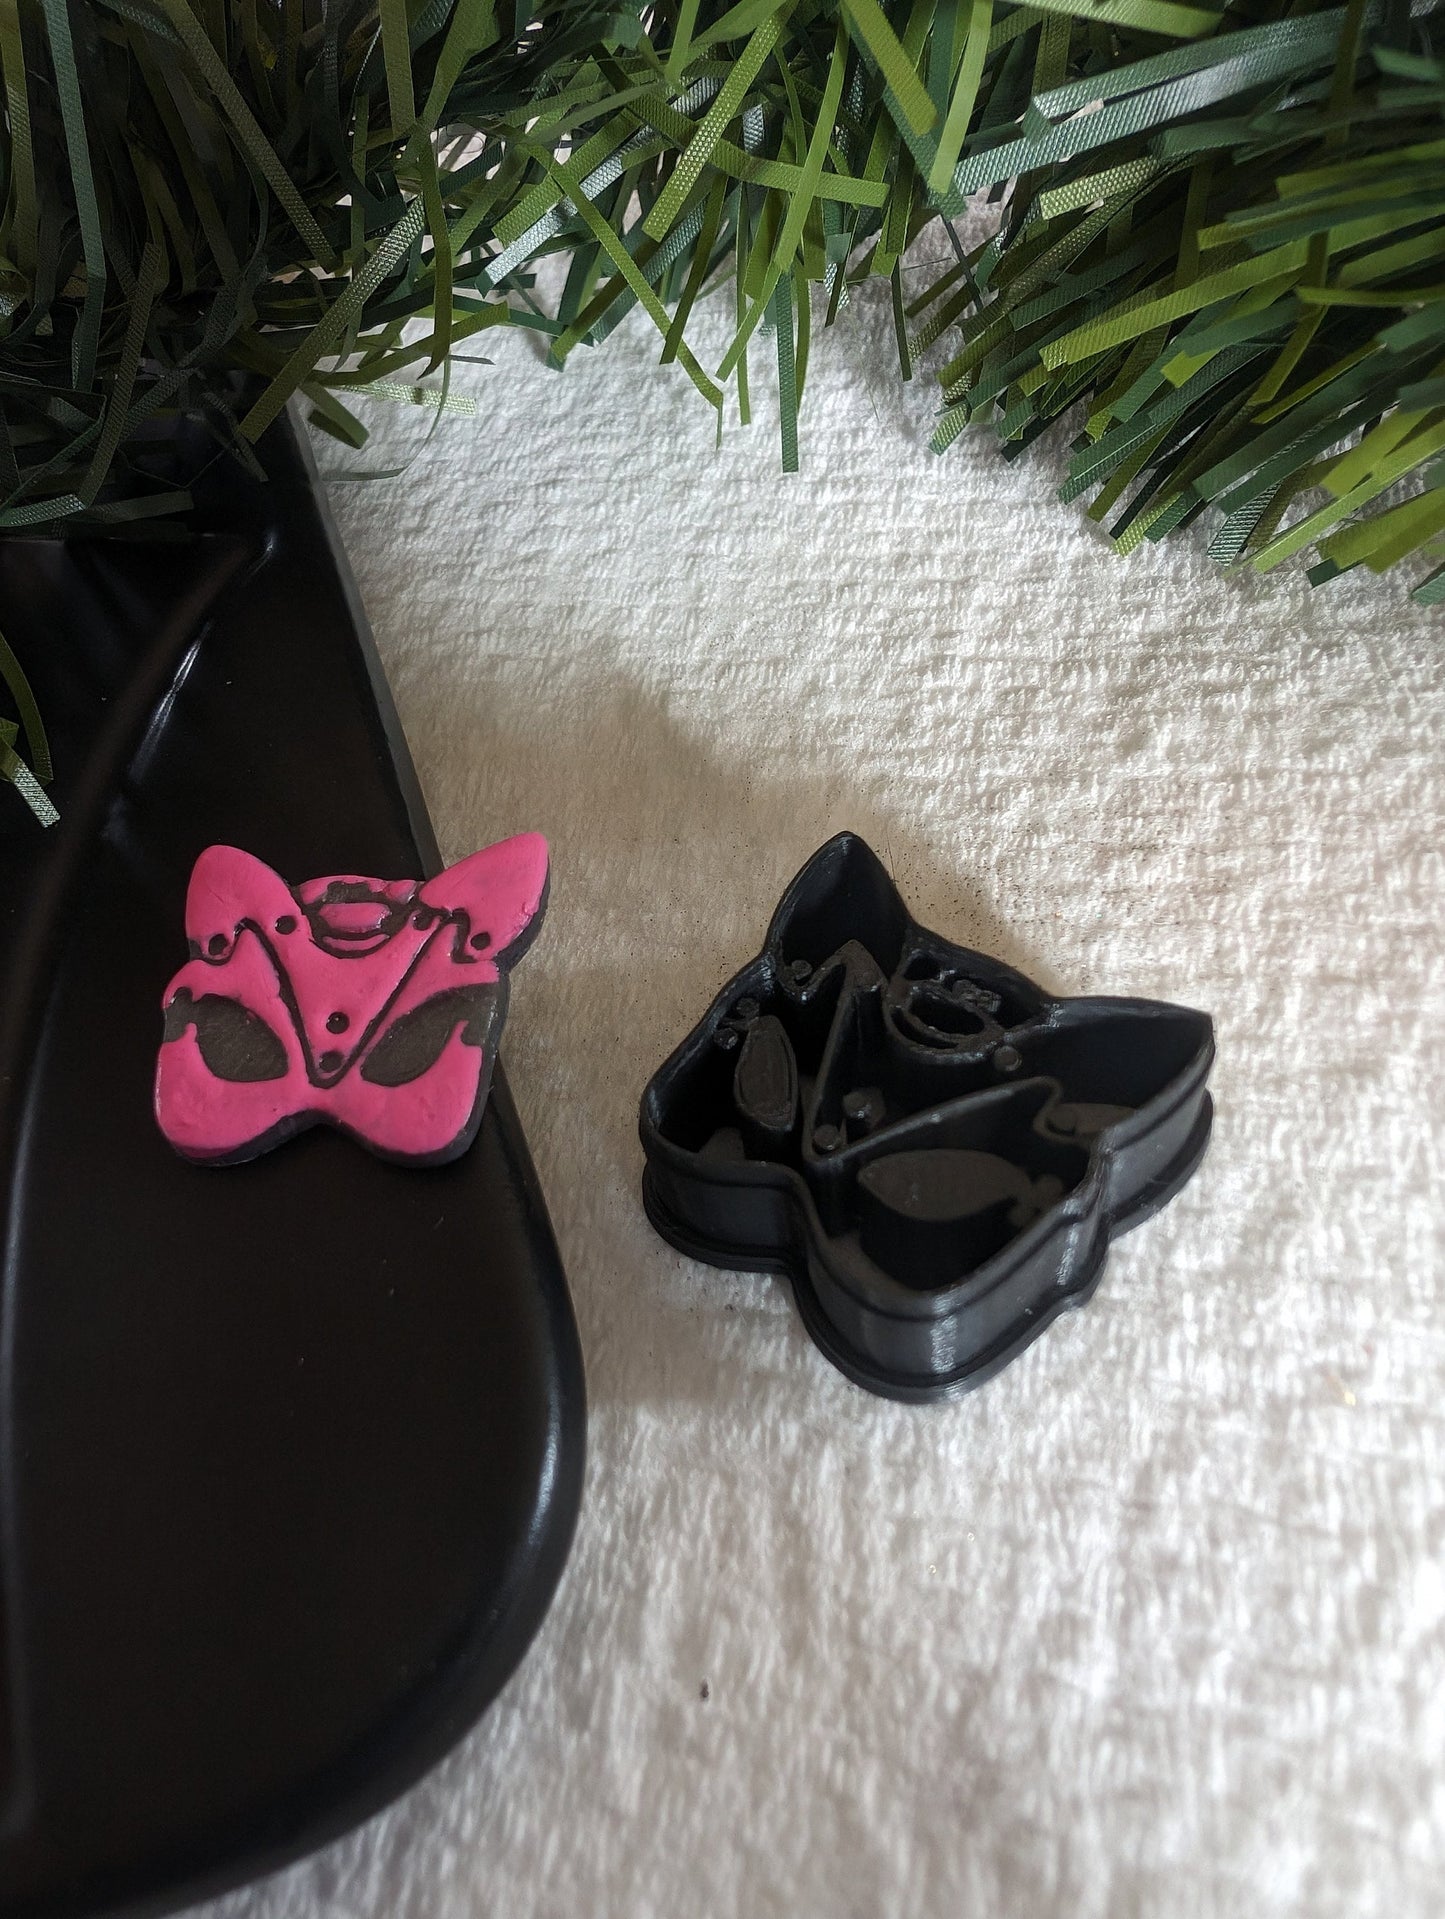 Kinky Cat Ear Mask Sharp Clay Cutter